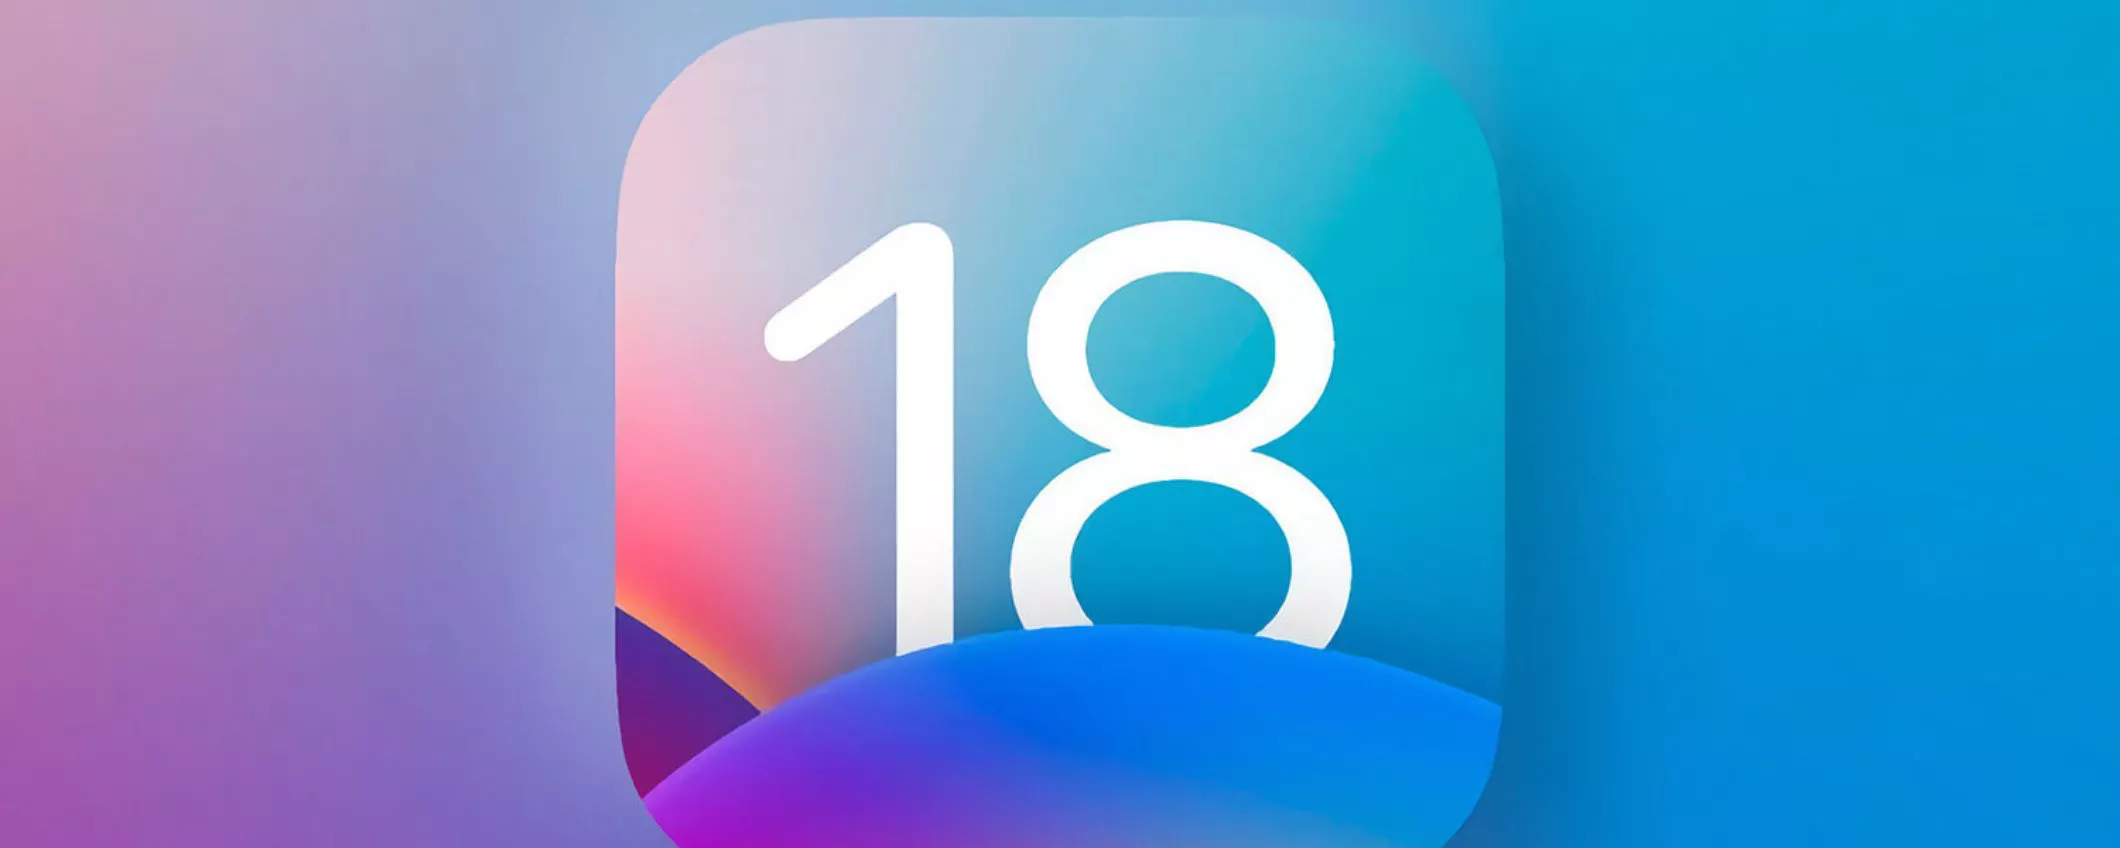 iOS 18: arrivano feature pensate per migliorare l'accessibilità